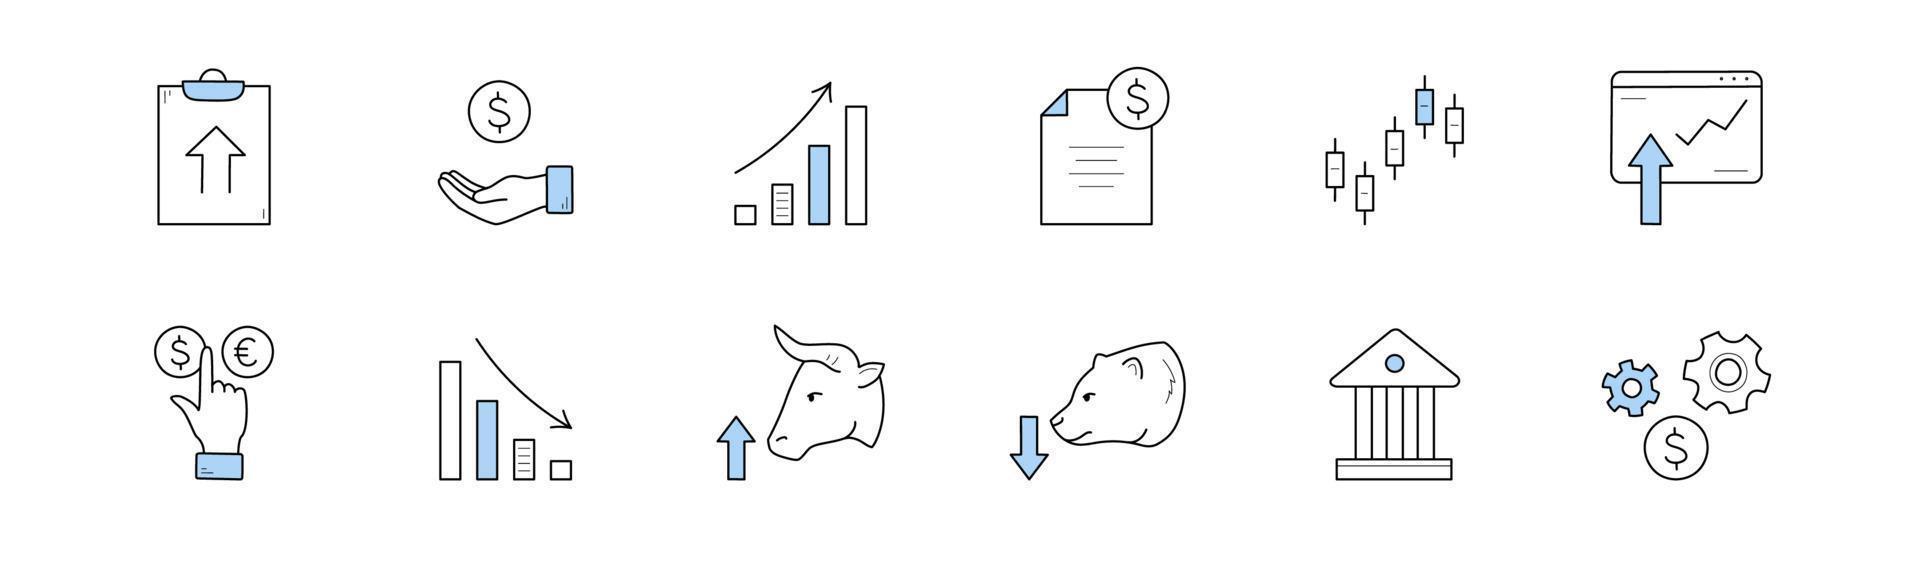 icônes de doodle de marché boursier, ensemble de vecteurs isolés vecteur